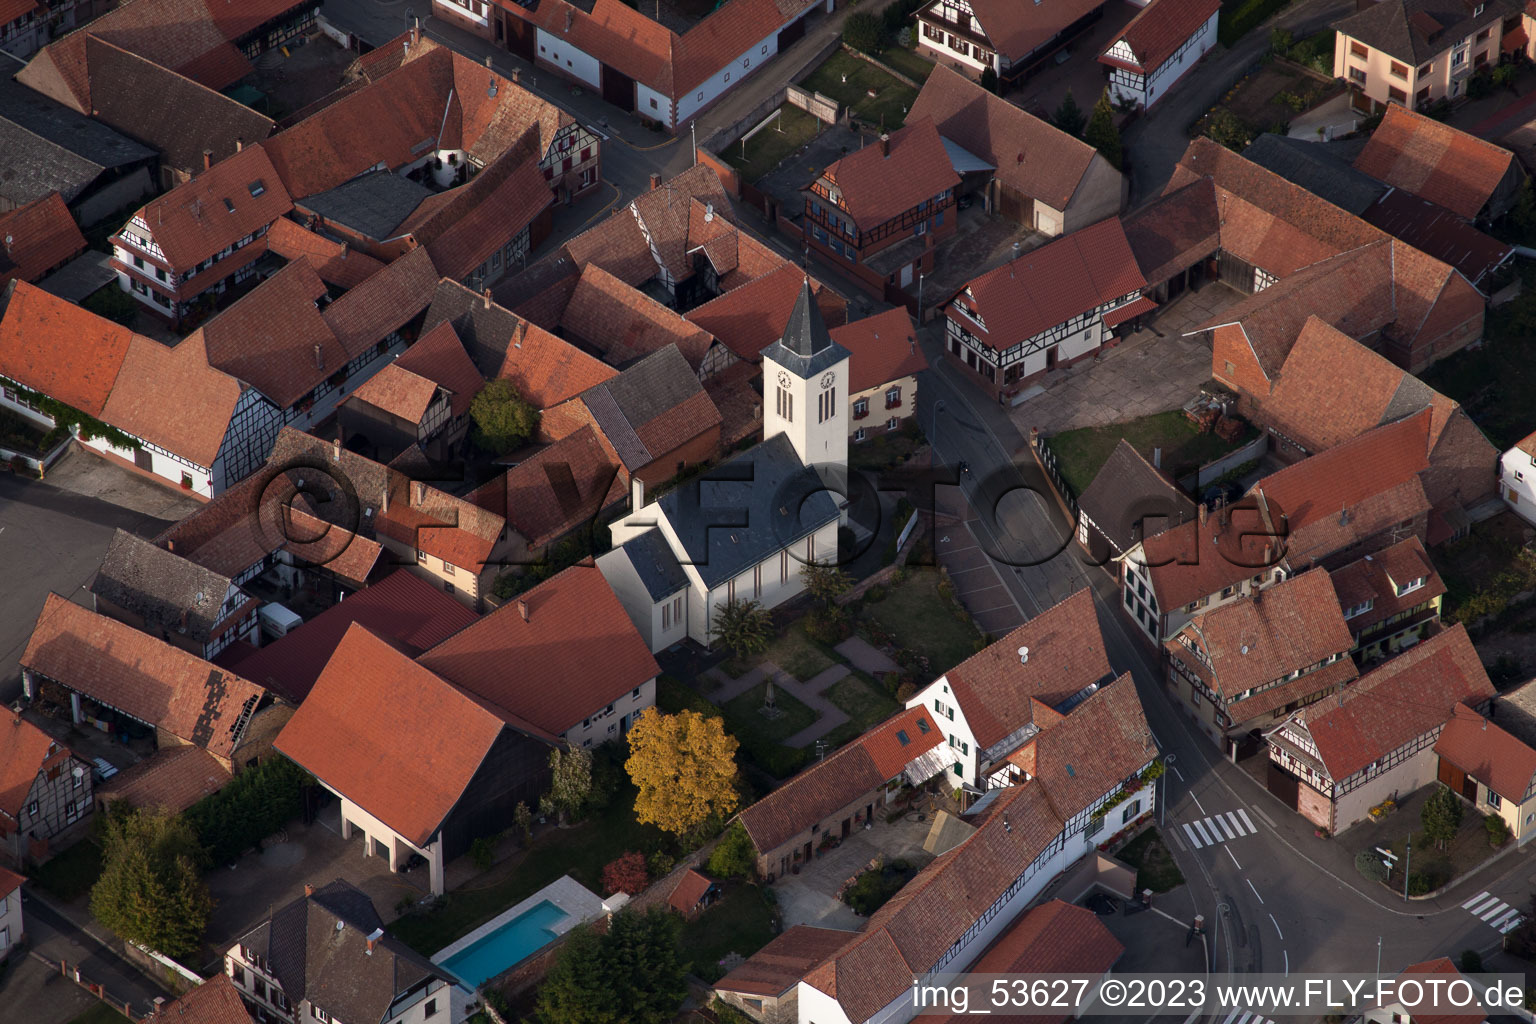 Engwiller im Bundesland Bas-Rhin, Frankreich aus der Luft betrachtet